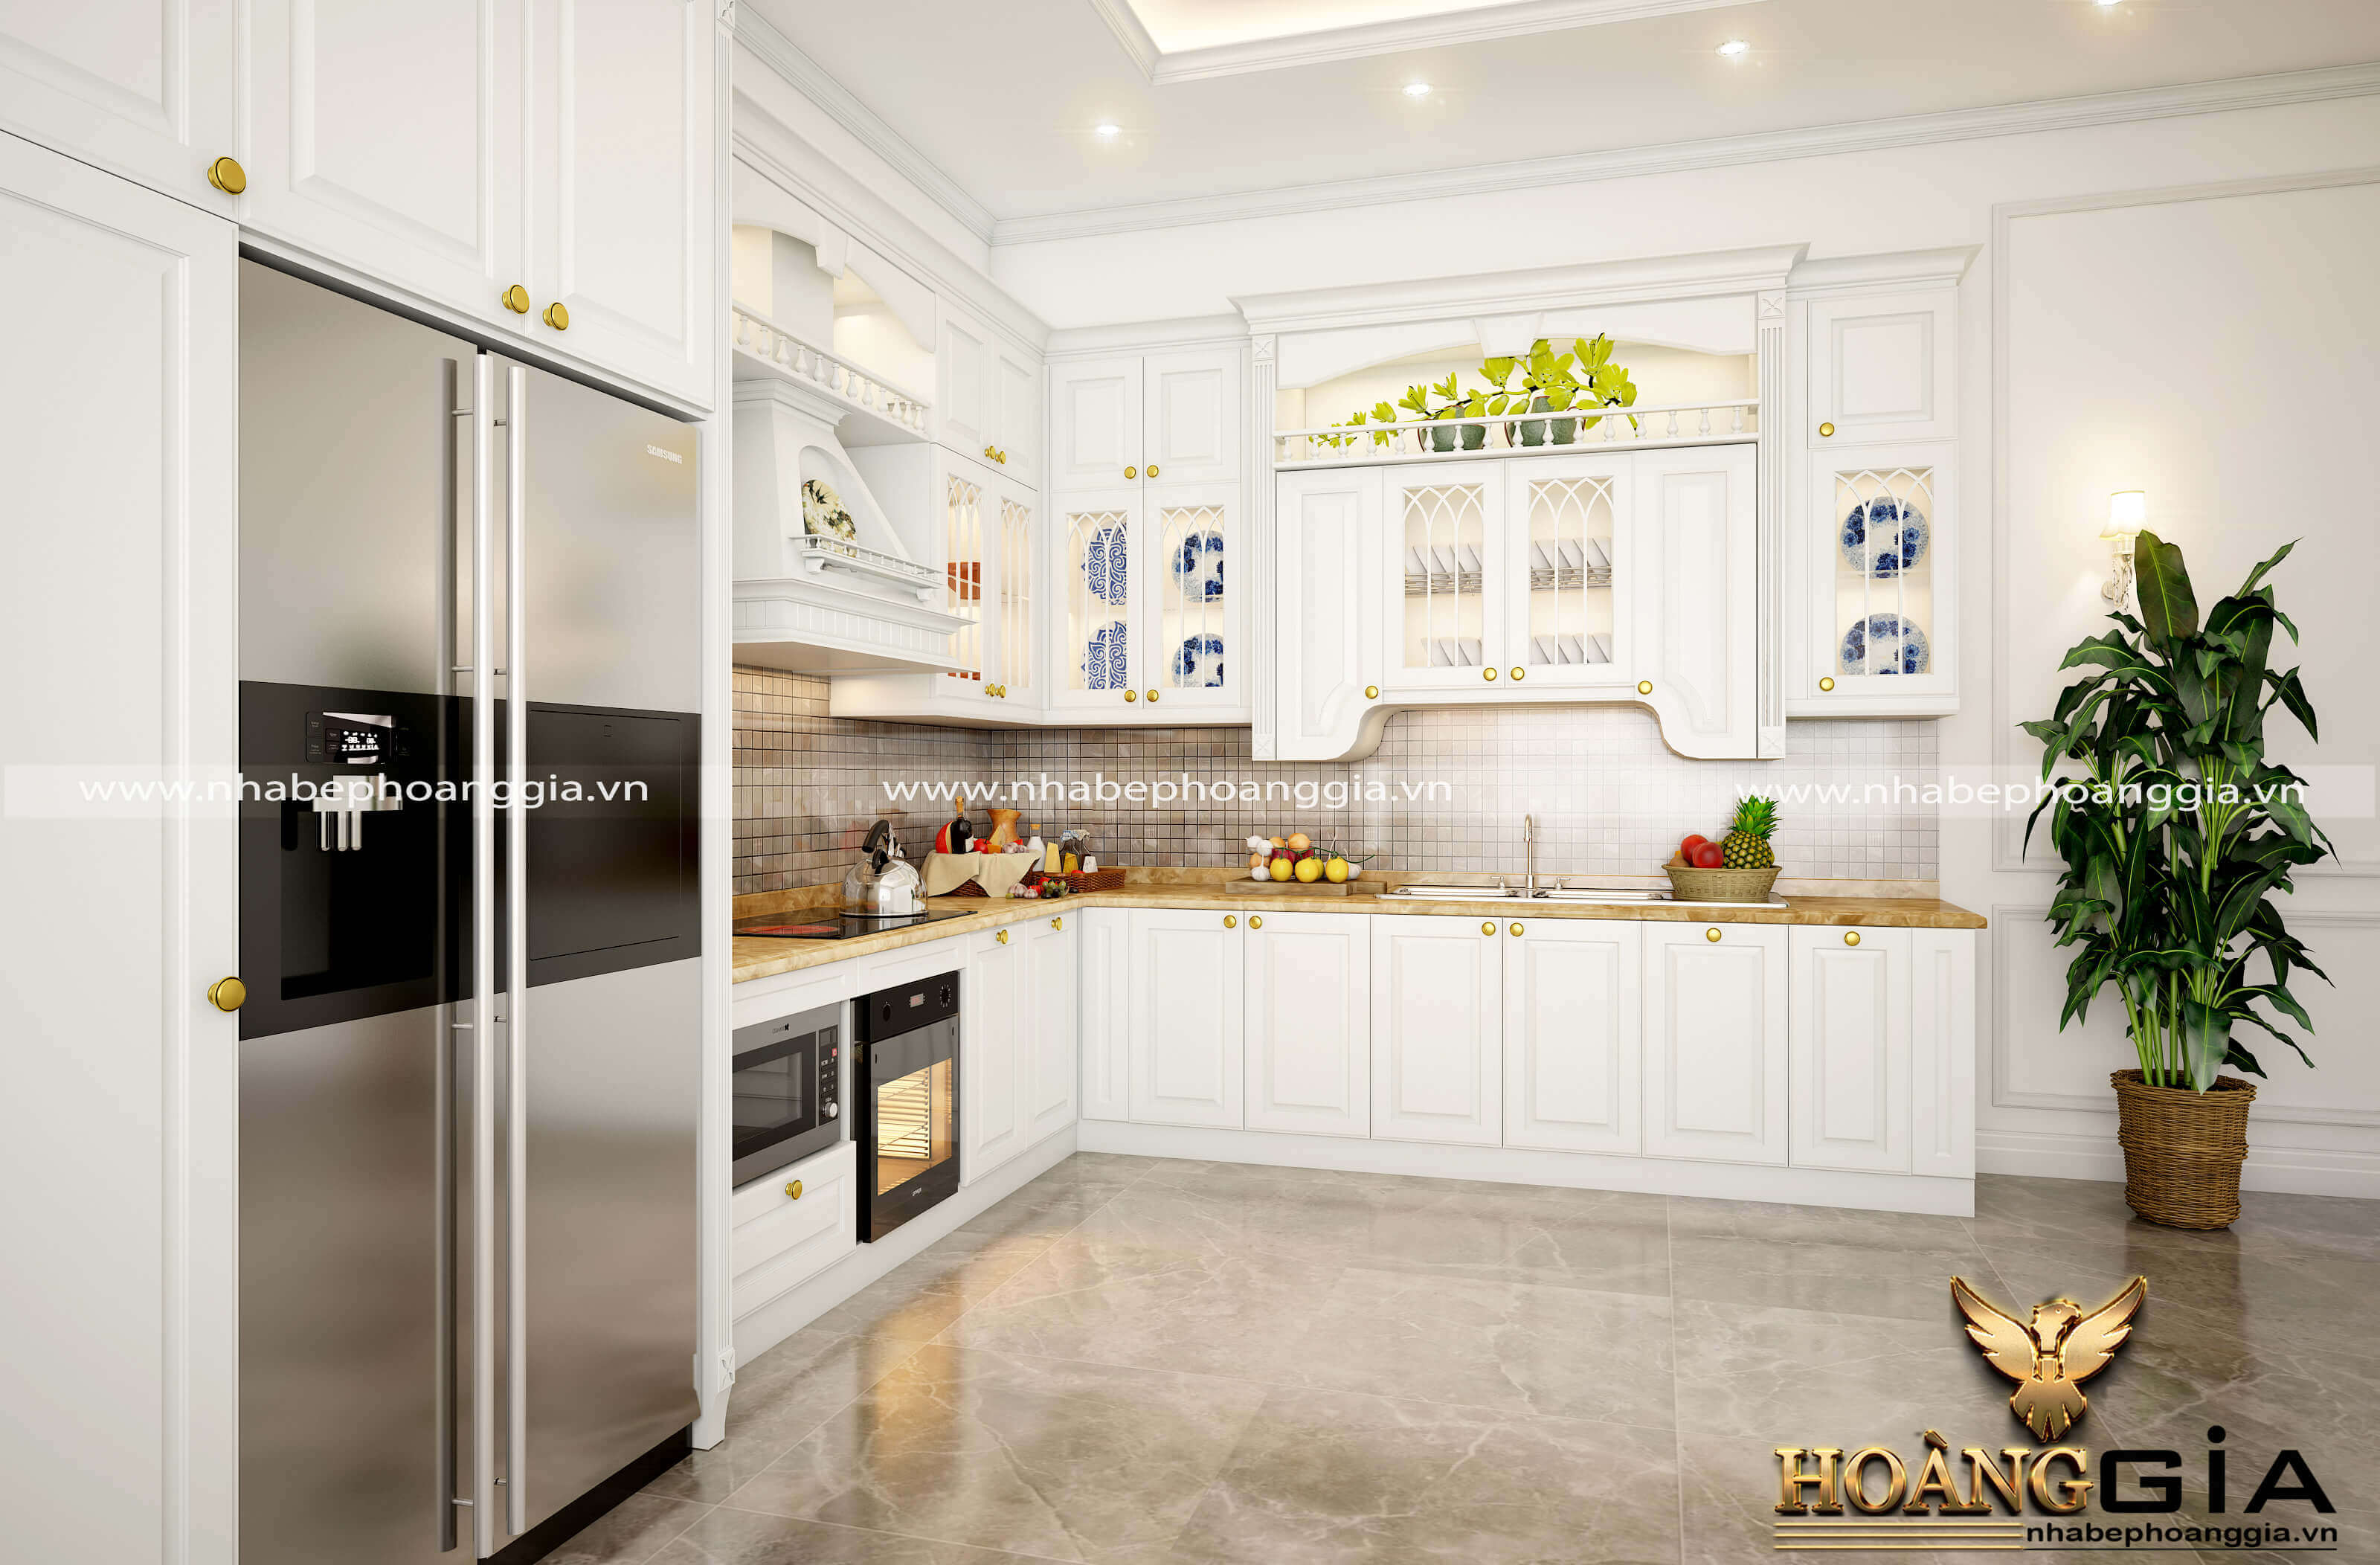 Có nên làm tủ bếp màu trắng trang hoàng cho căn bếp?